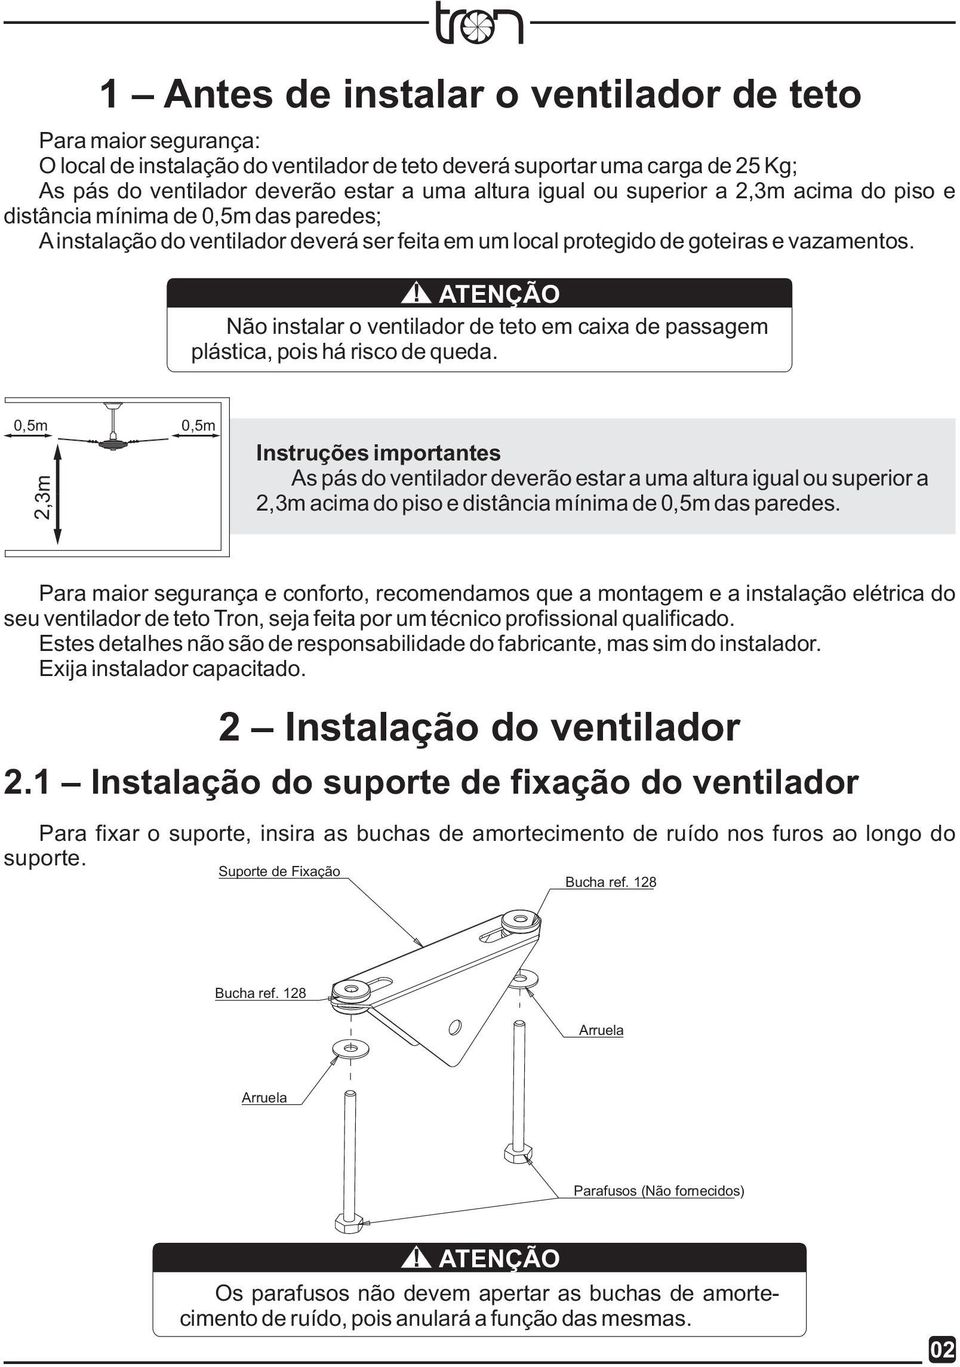 ! ATENÇÃO Não instalar o ventilador de teto em caixa de passagem plástica, pois há risco de queda.